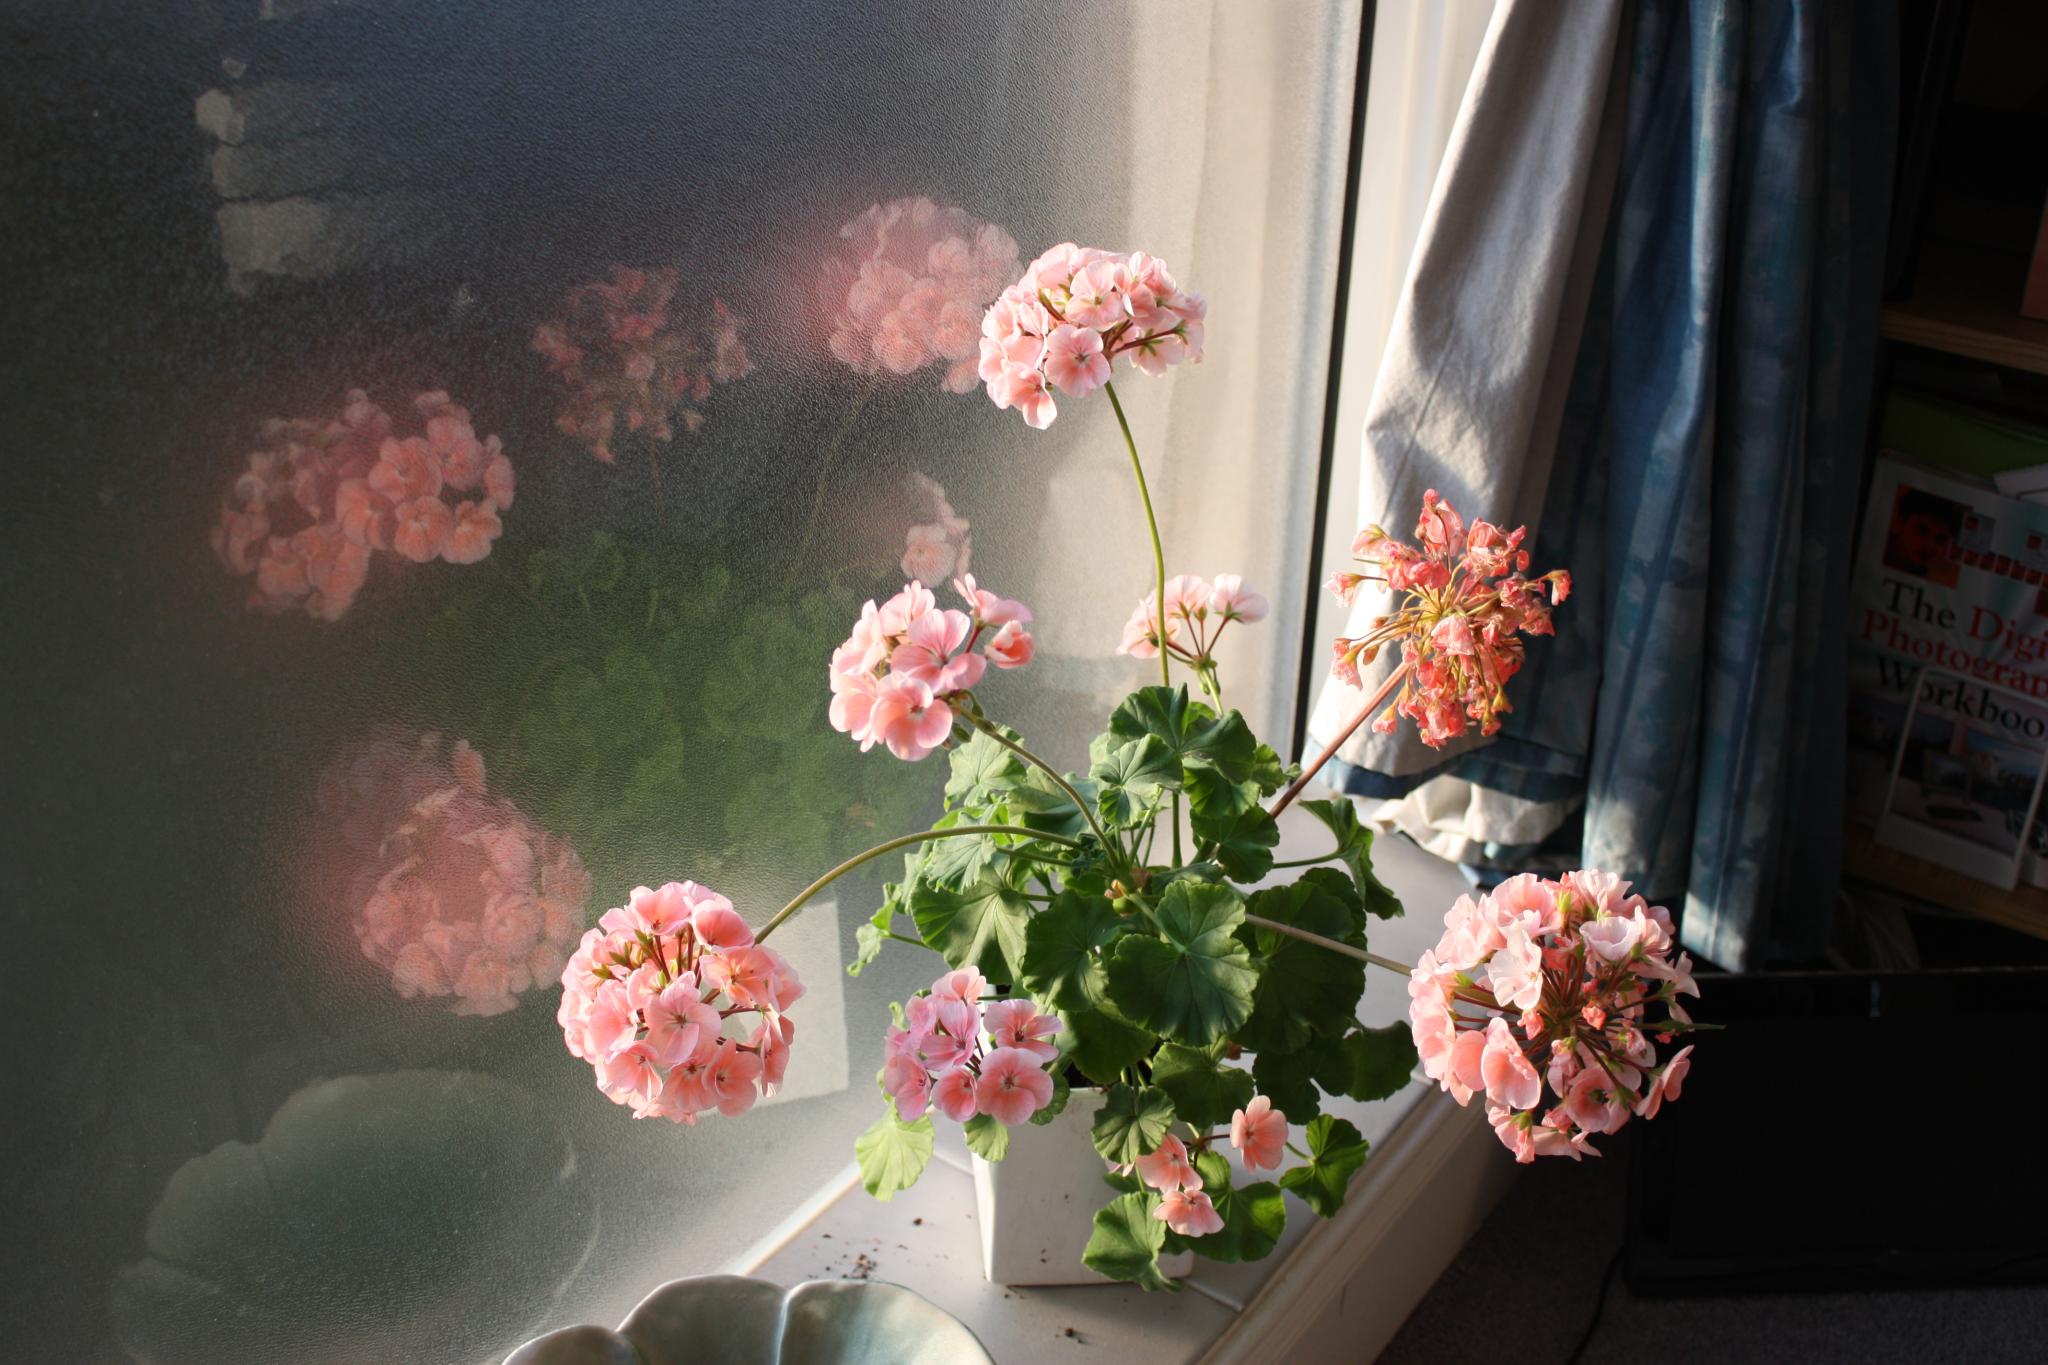 geranium in window